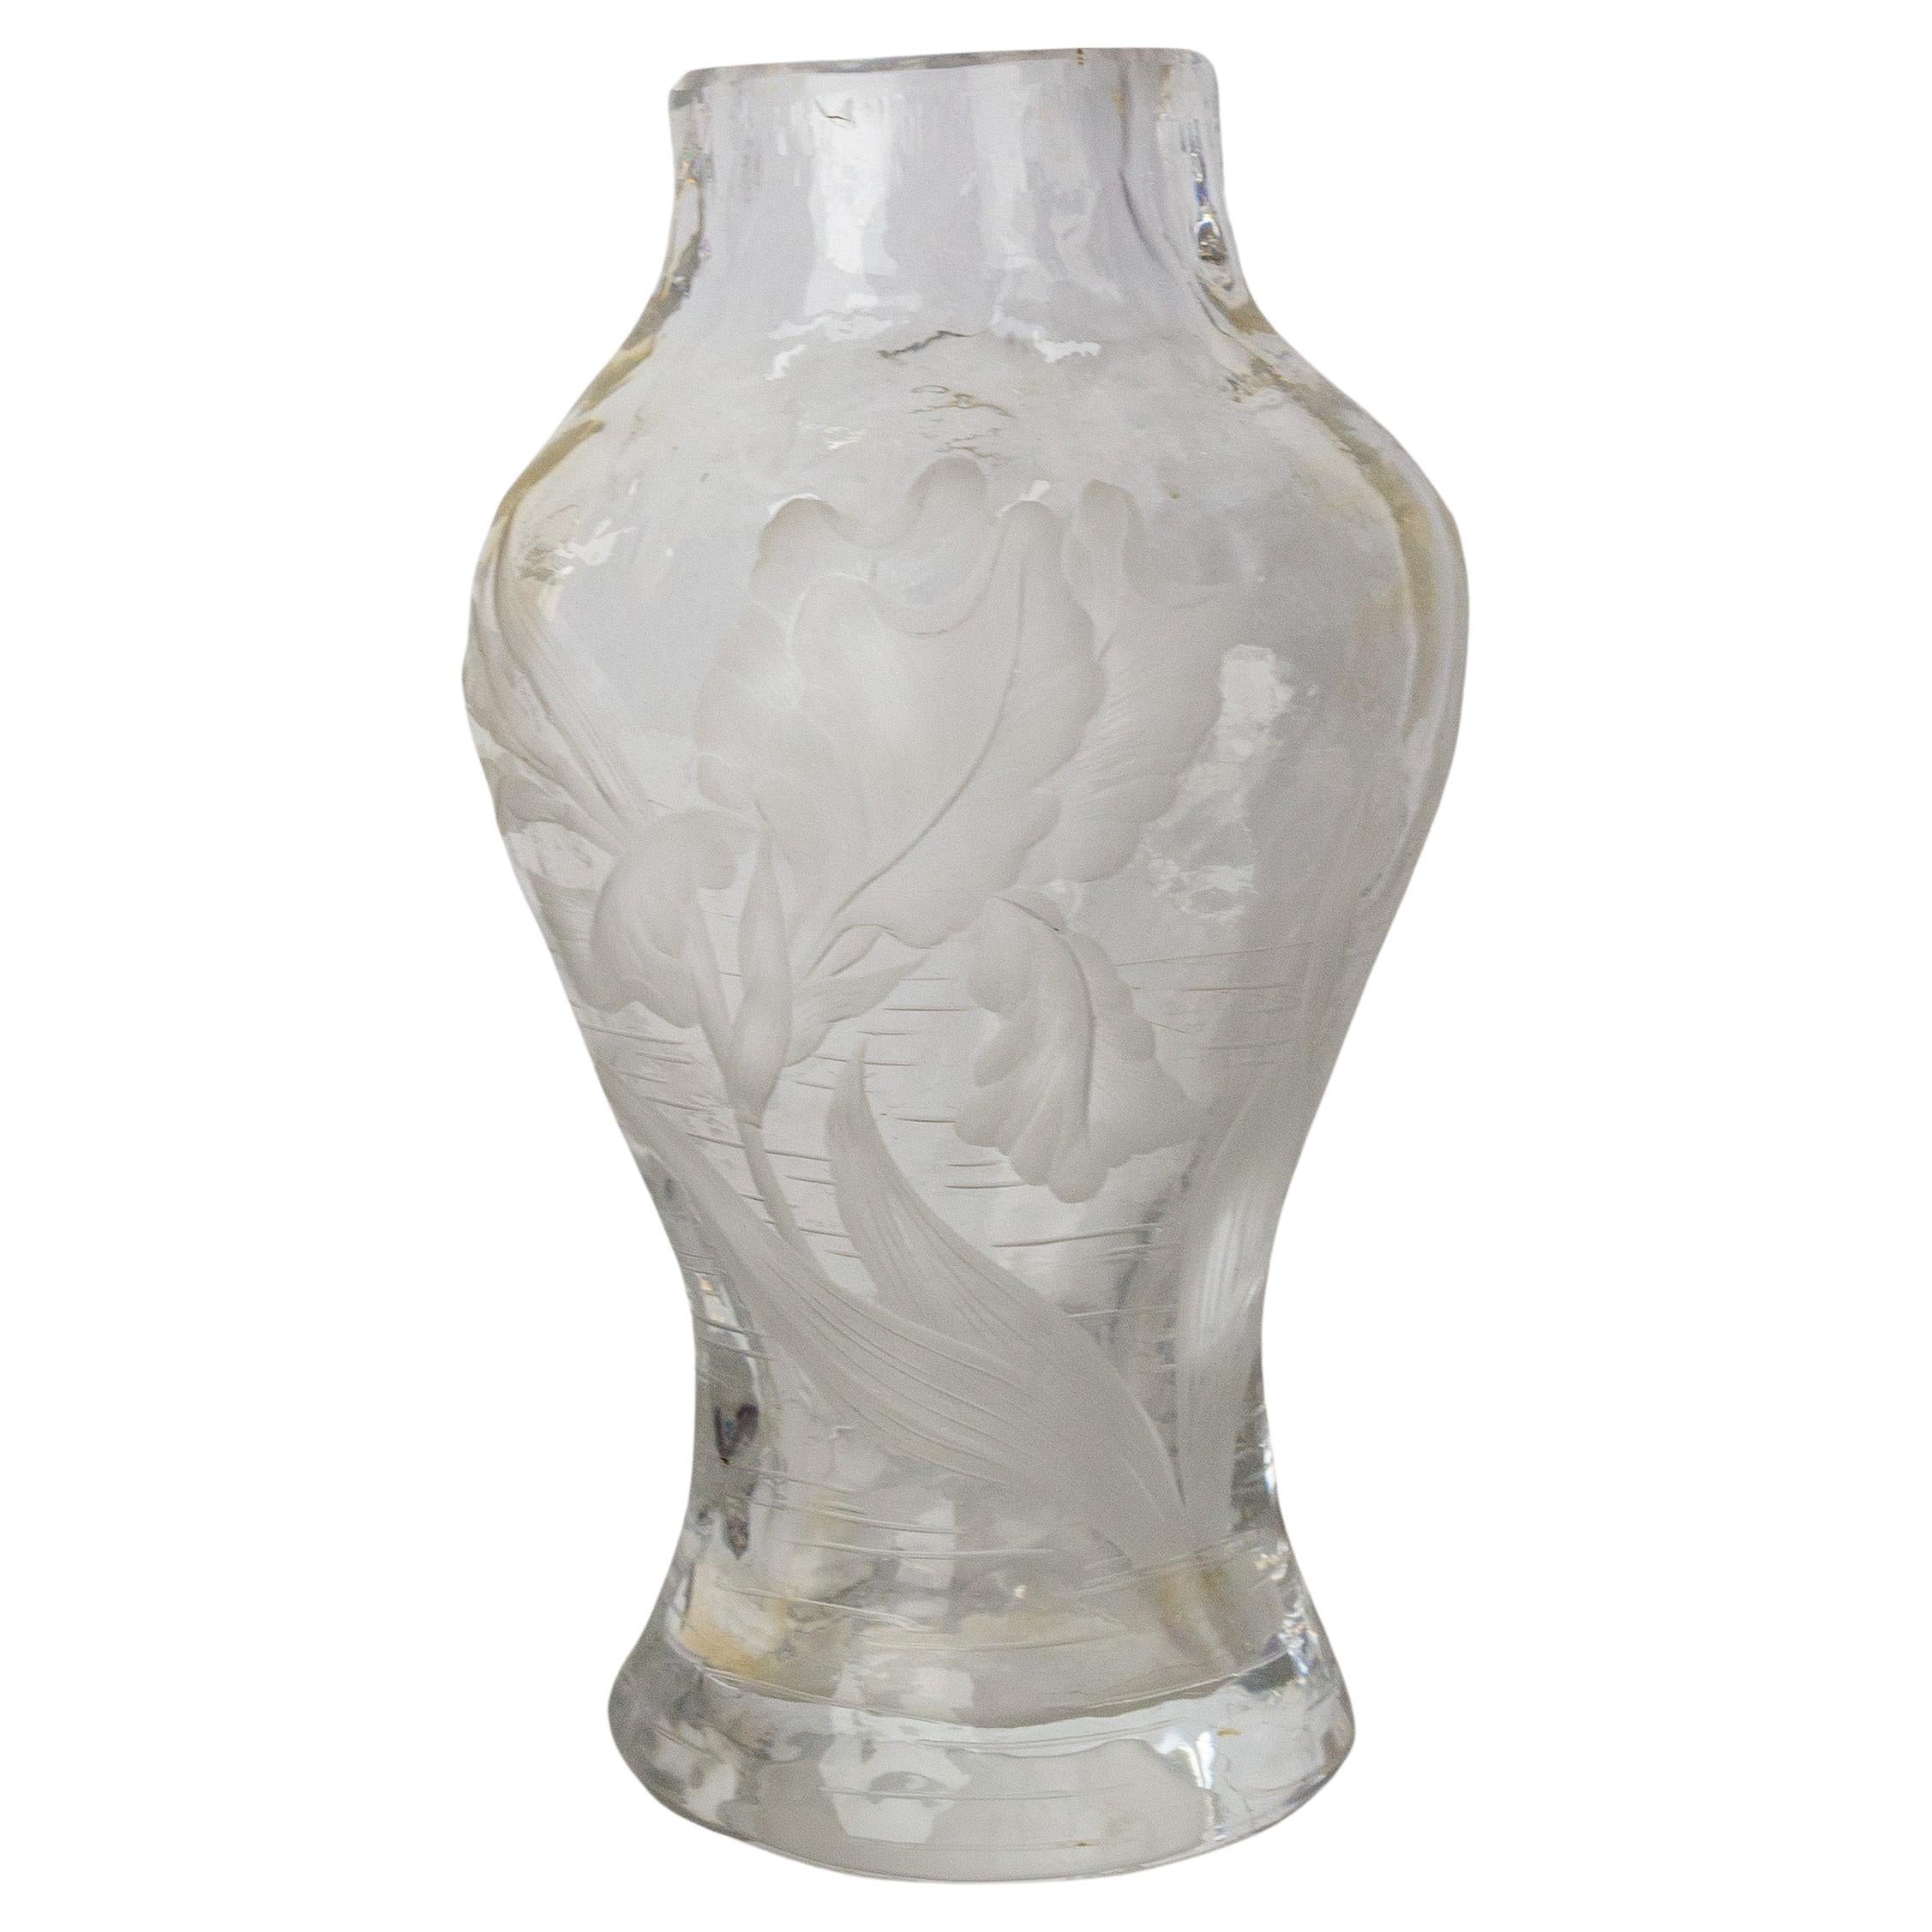 Französische Glasvase im Jugendstil
Im Vordergrund einer lakustrischen Dekoration ist eine Schwertlilie eingraviert.
Die Iris ist eine der typischen Blumen des Jugendstils
Unregelmäßiger Vasenhals und -fuß, typisch für den Art Nouveau.
Maison